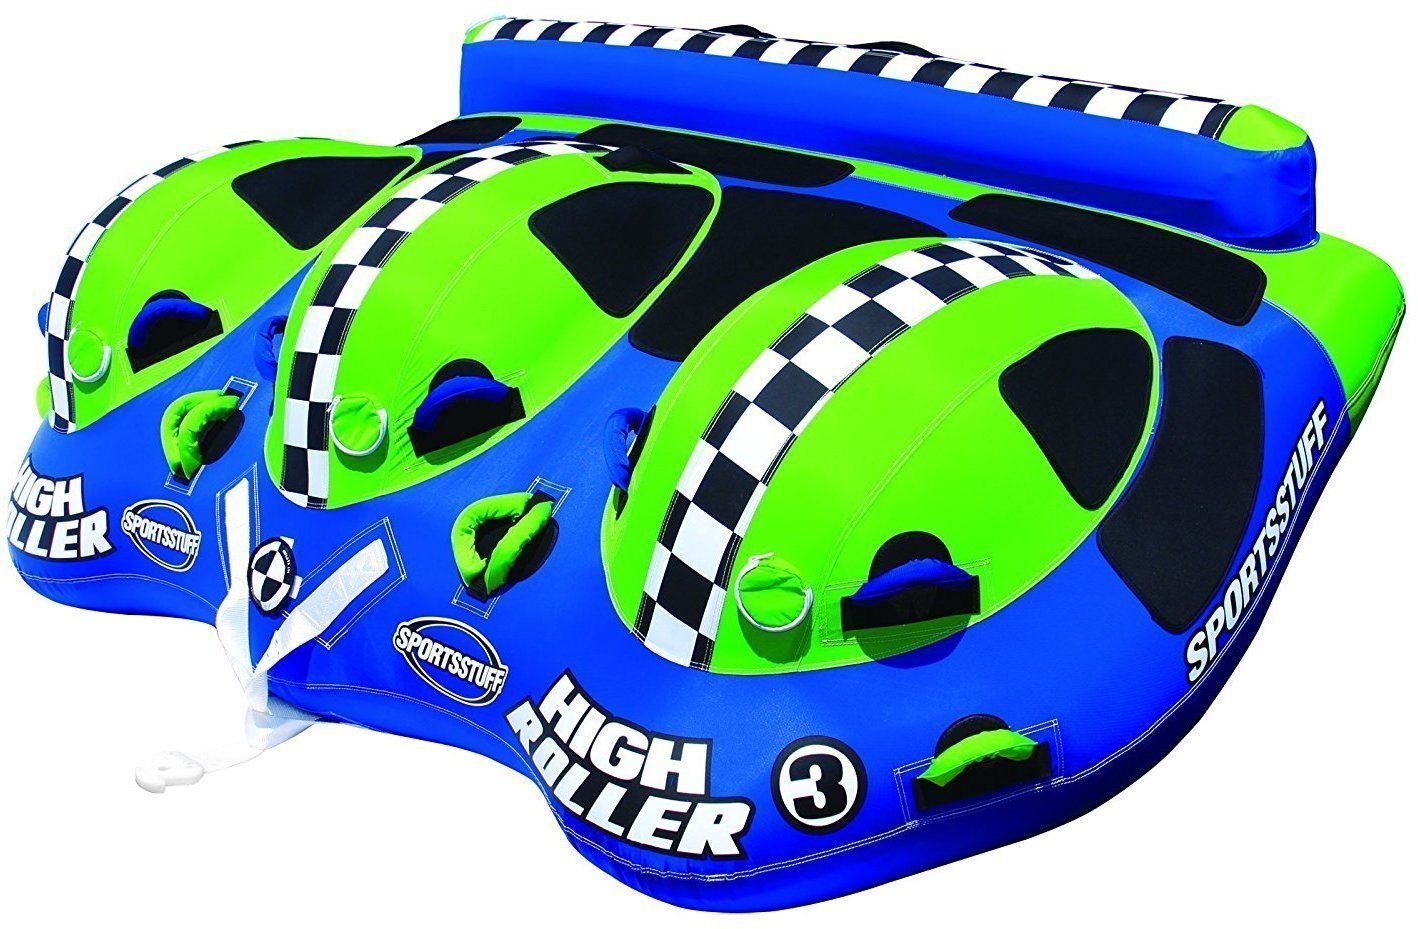 Φουσκωτό Δράσης Sportsstuff Towable High Roller 3 Personen Blue/Green